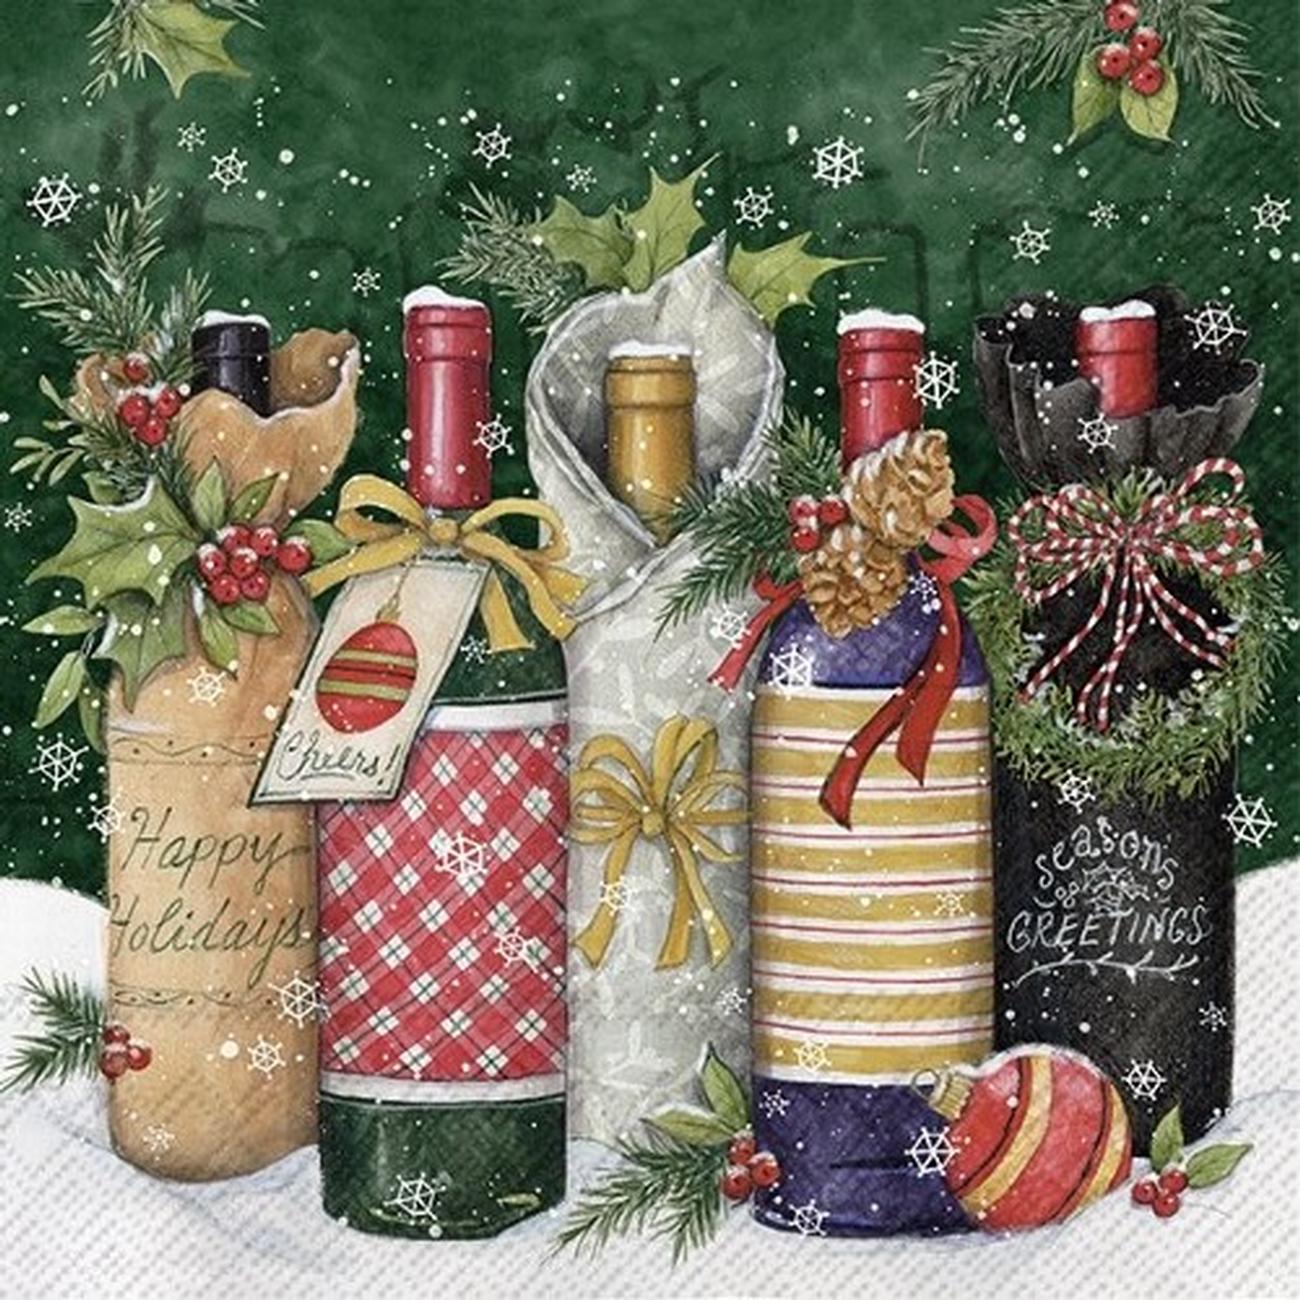 ihr-Christmas-cocktail-napkins-winter-specials-wine - IHR Christmas Cocktail Napkins Winter Specials